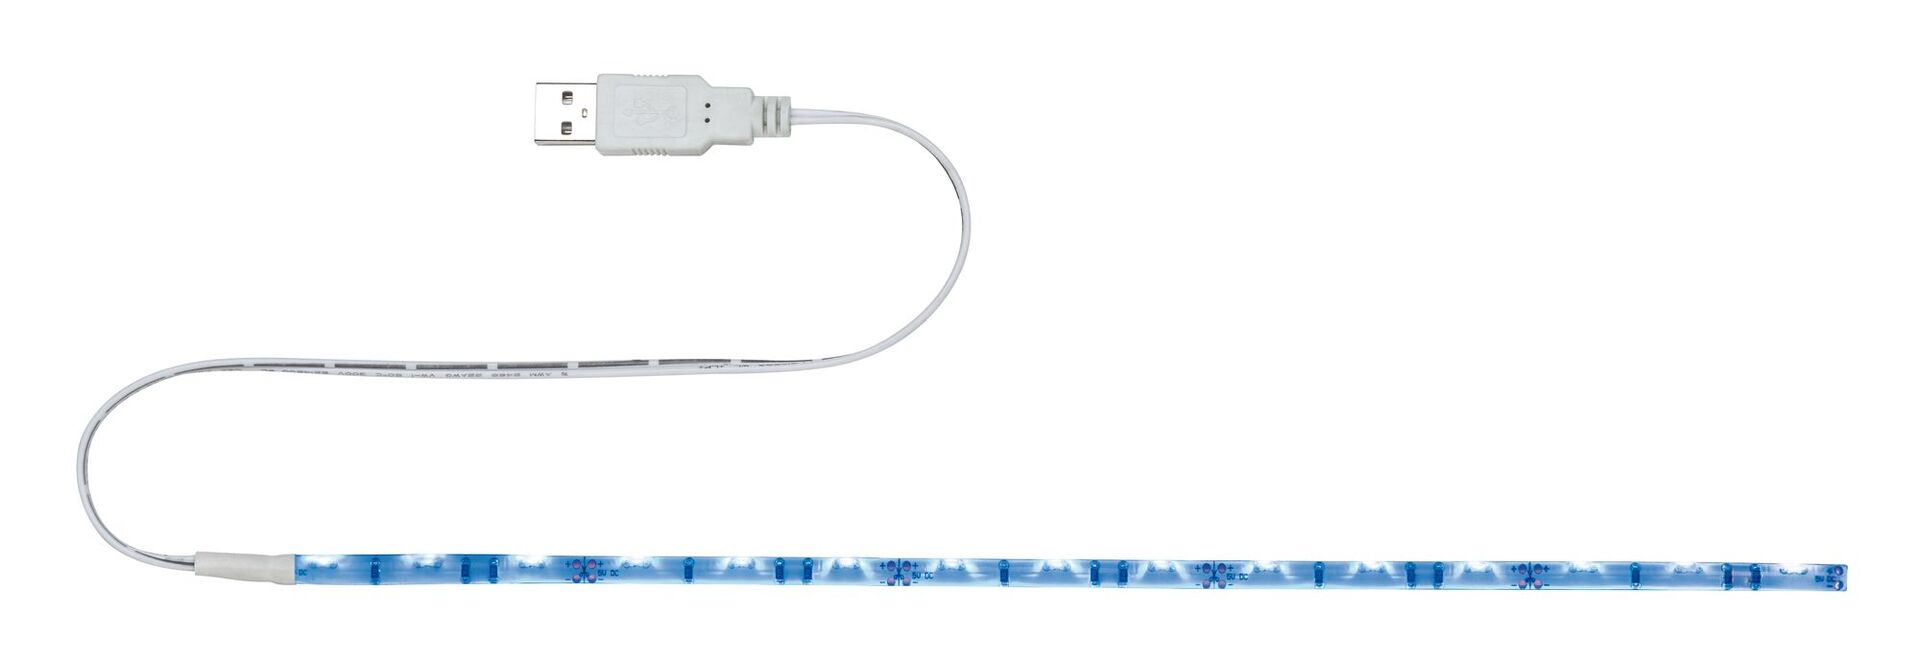 Paulmann Licht GmbH USB LED Strip 0,3m 1,5W